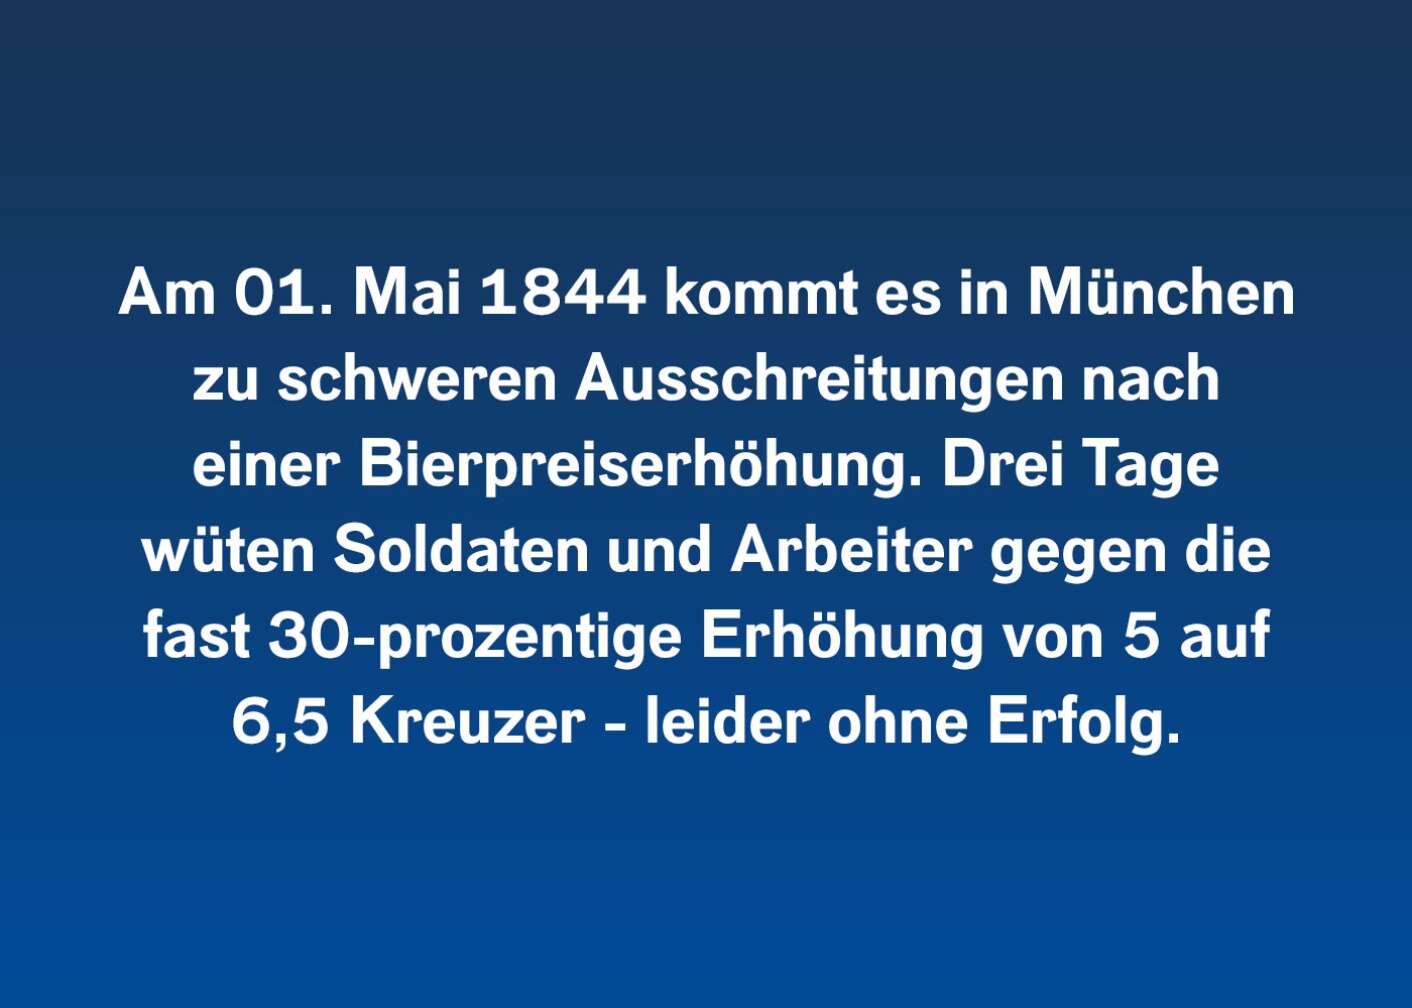 Am 01. Mai 1844 kommt es in München zu schweren Ausschreitungen nach einer Bierpreiserhöhung. Drei Tage wüten Soldaten und Arbeiter gegen die fast 30-prozentige Erhöhung von 5 auf 6,5 Kreuzer – leider ohne Erfolg.